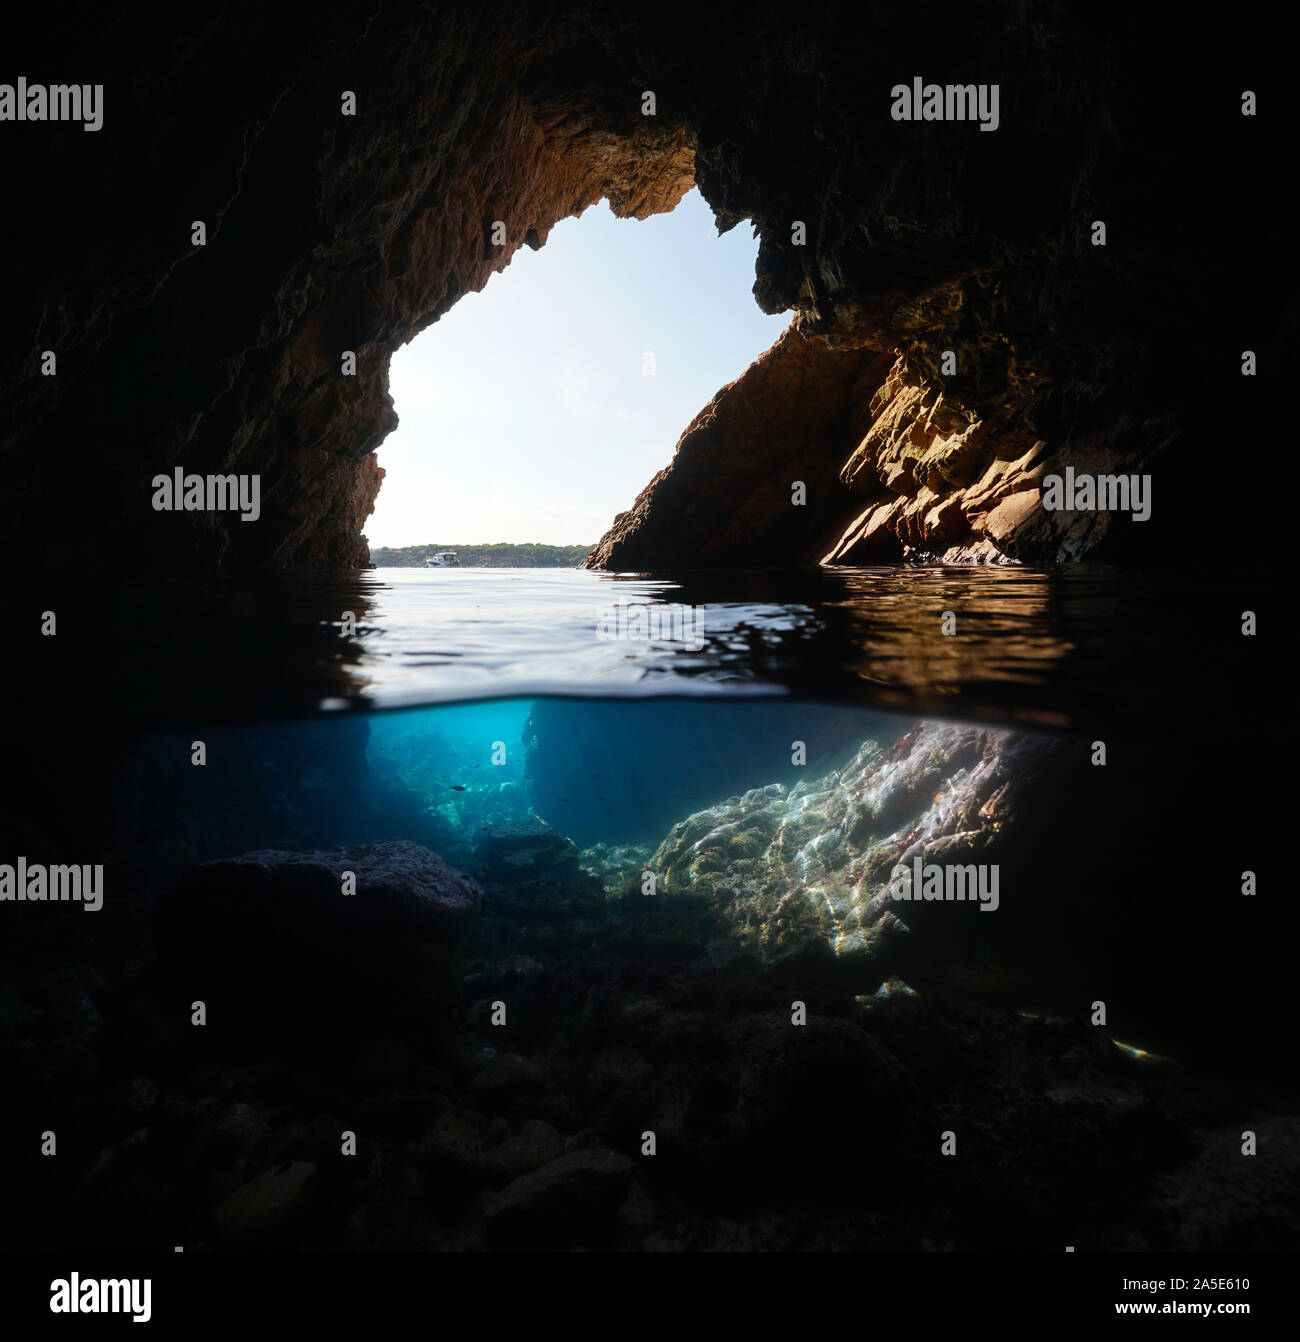 In eine Wasserhöhle, die an der Küste, geteilte Ansicht über und unter Wasser, Mittelmeer, Spanien, Costa Brava, Katalonien, Palamos Stockfoto